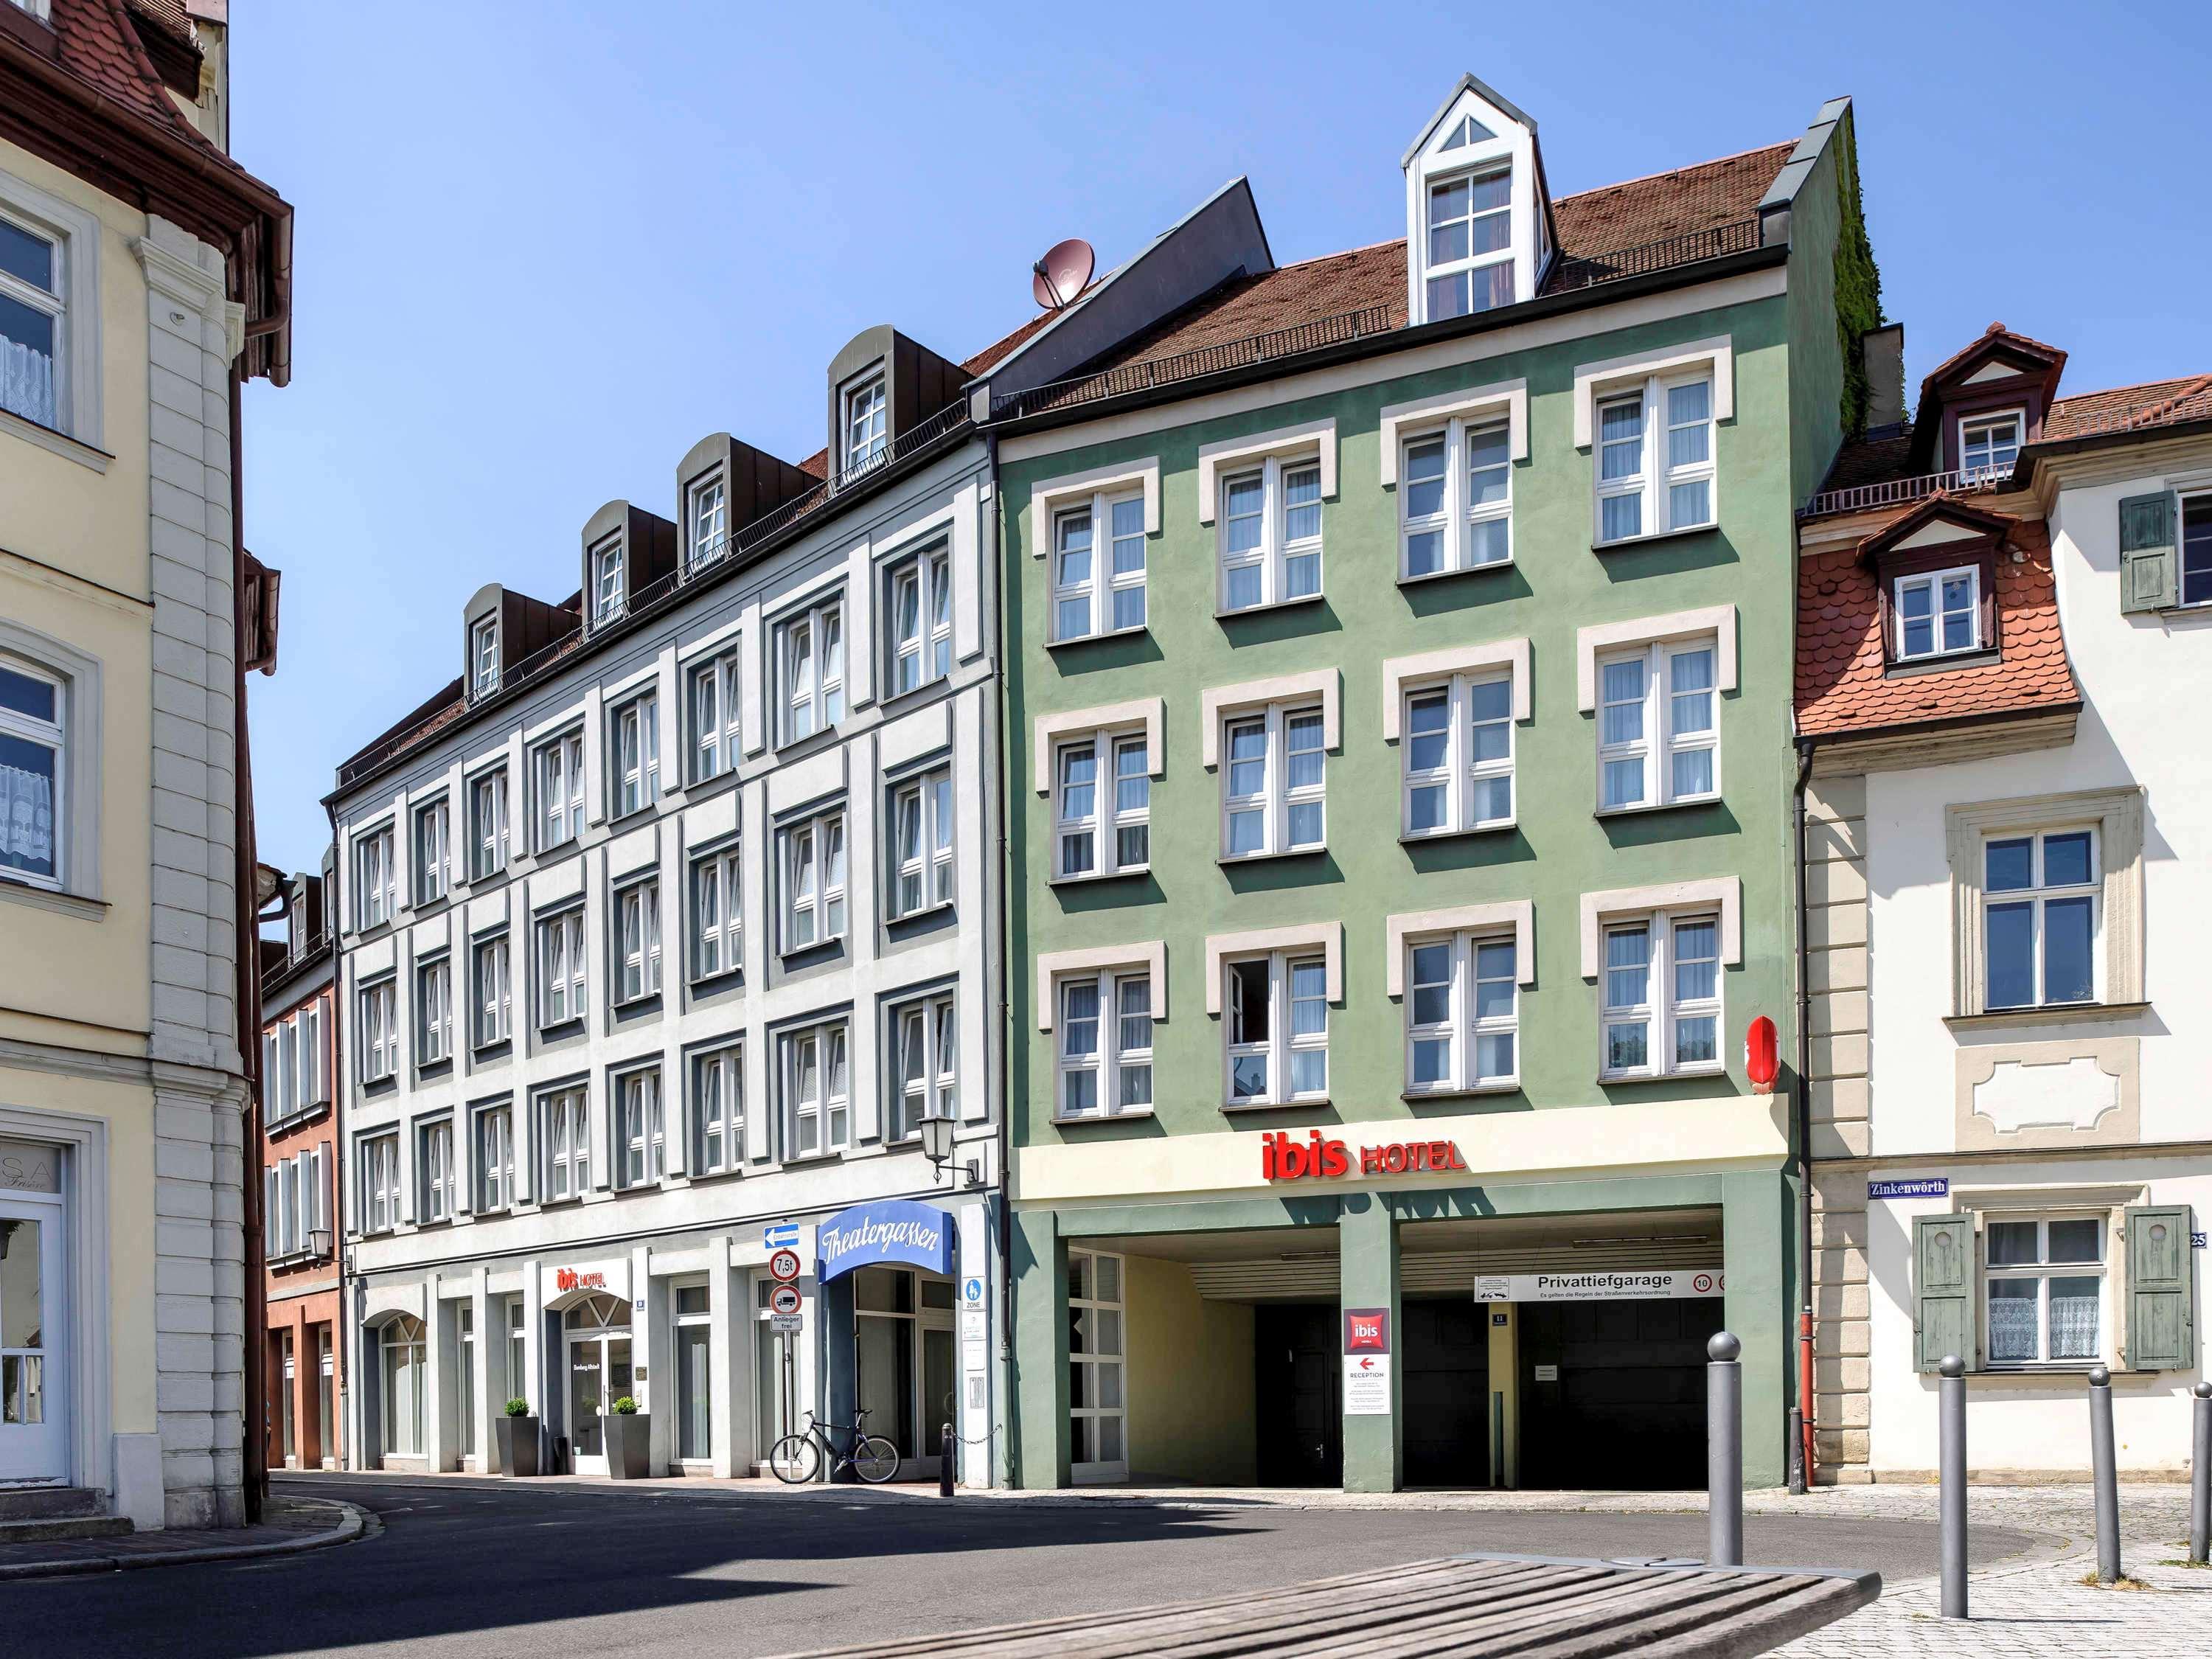 Ibis Bamberg Altstadt ภายนอก รูปภาพ